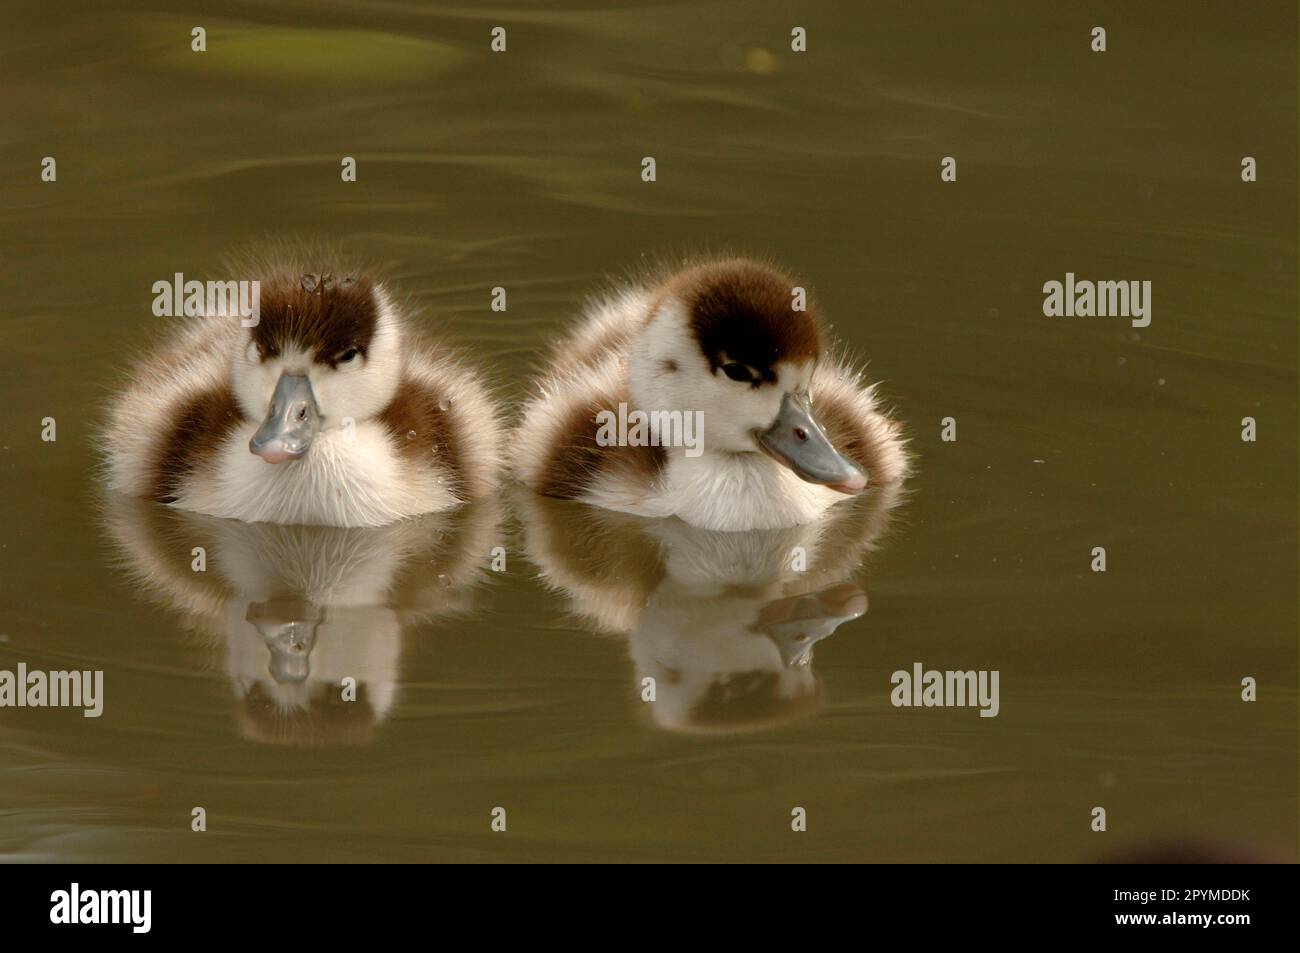 Shelduck (Tadorna tadorna) deux canetons reposant sur l'eau, Slimbridge, Angleterre, Royaume-Uni Banque D'Images